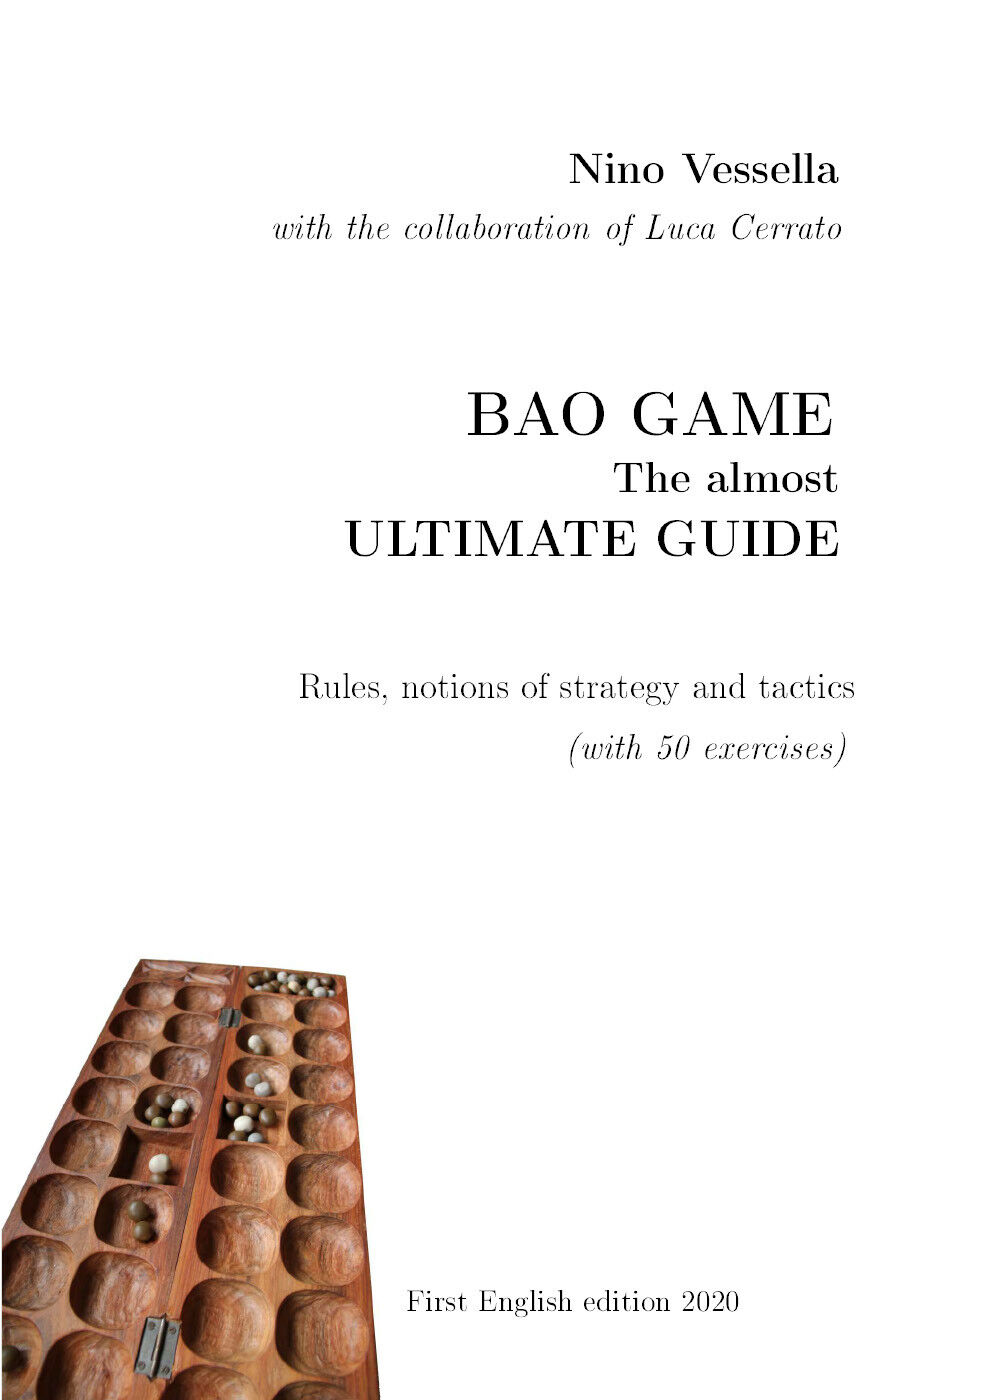 BAO GAME - The ultimate guide  di Nino Vessella,  2020,  Youcanprint